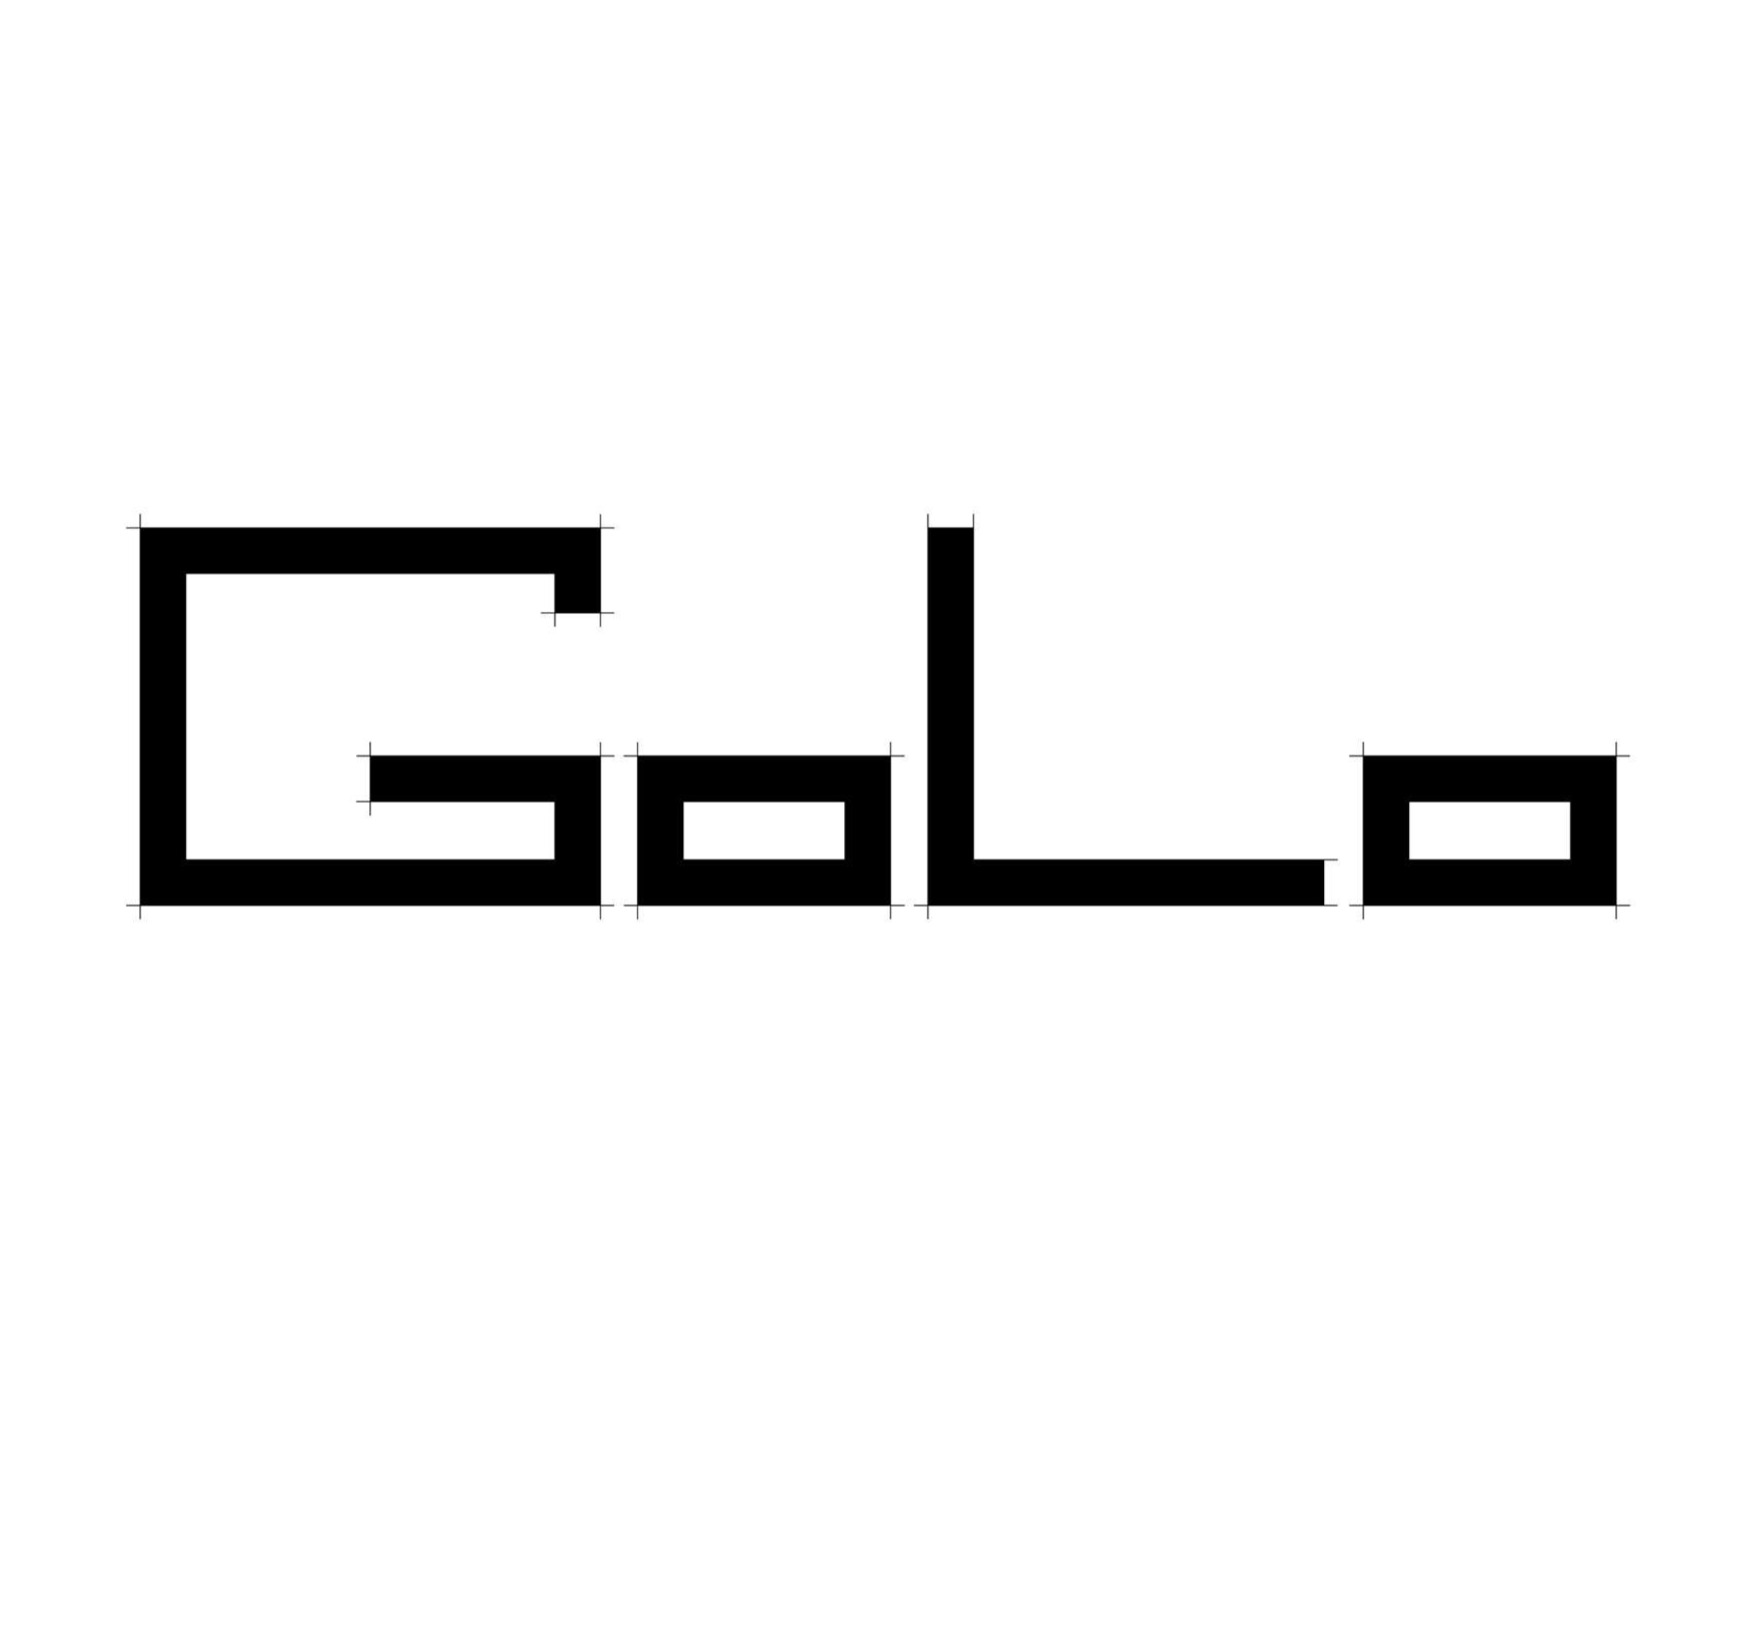 GoLo Architecture